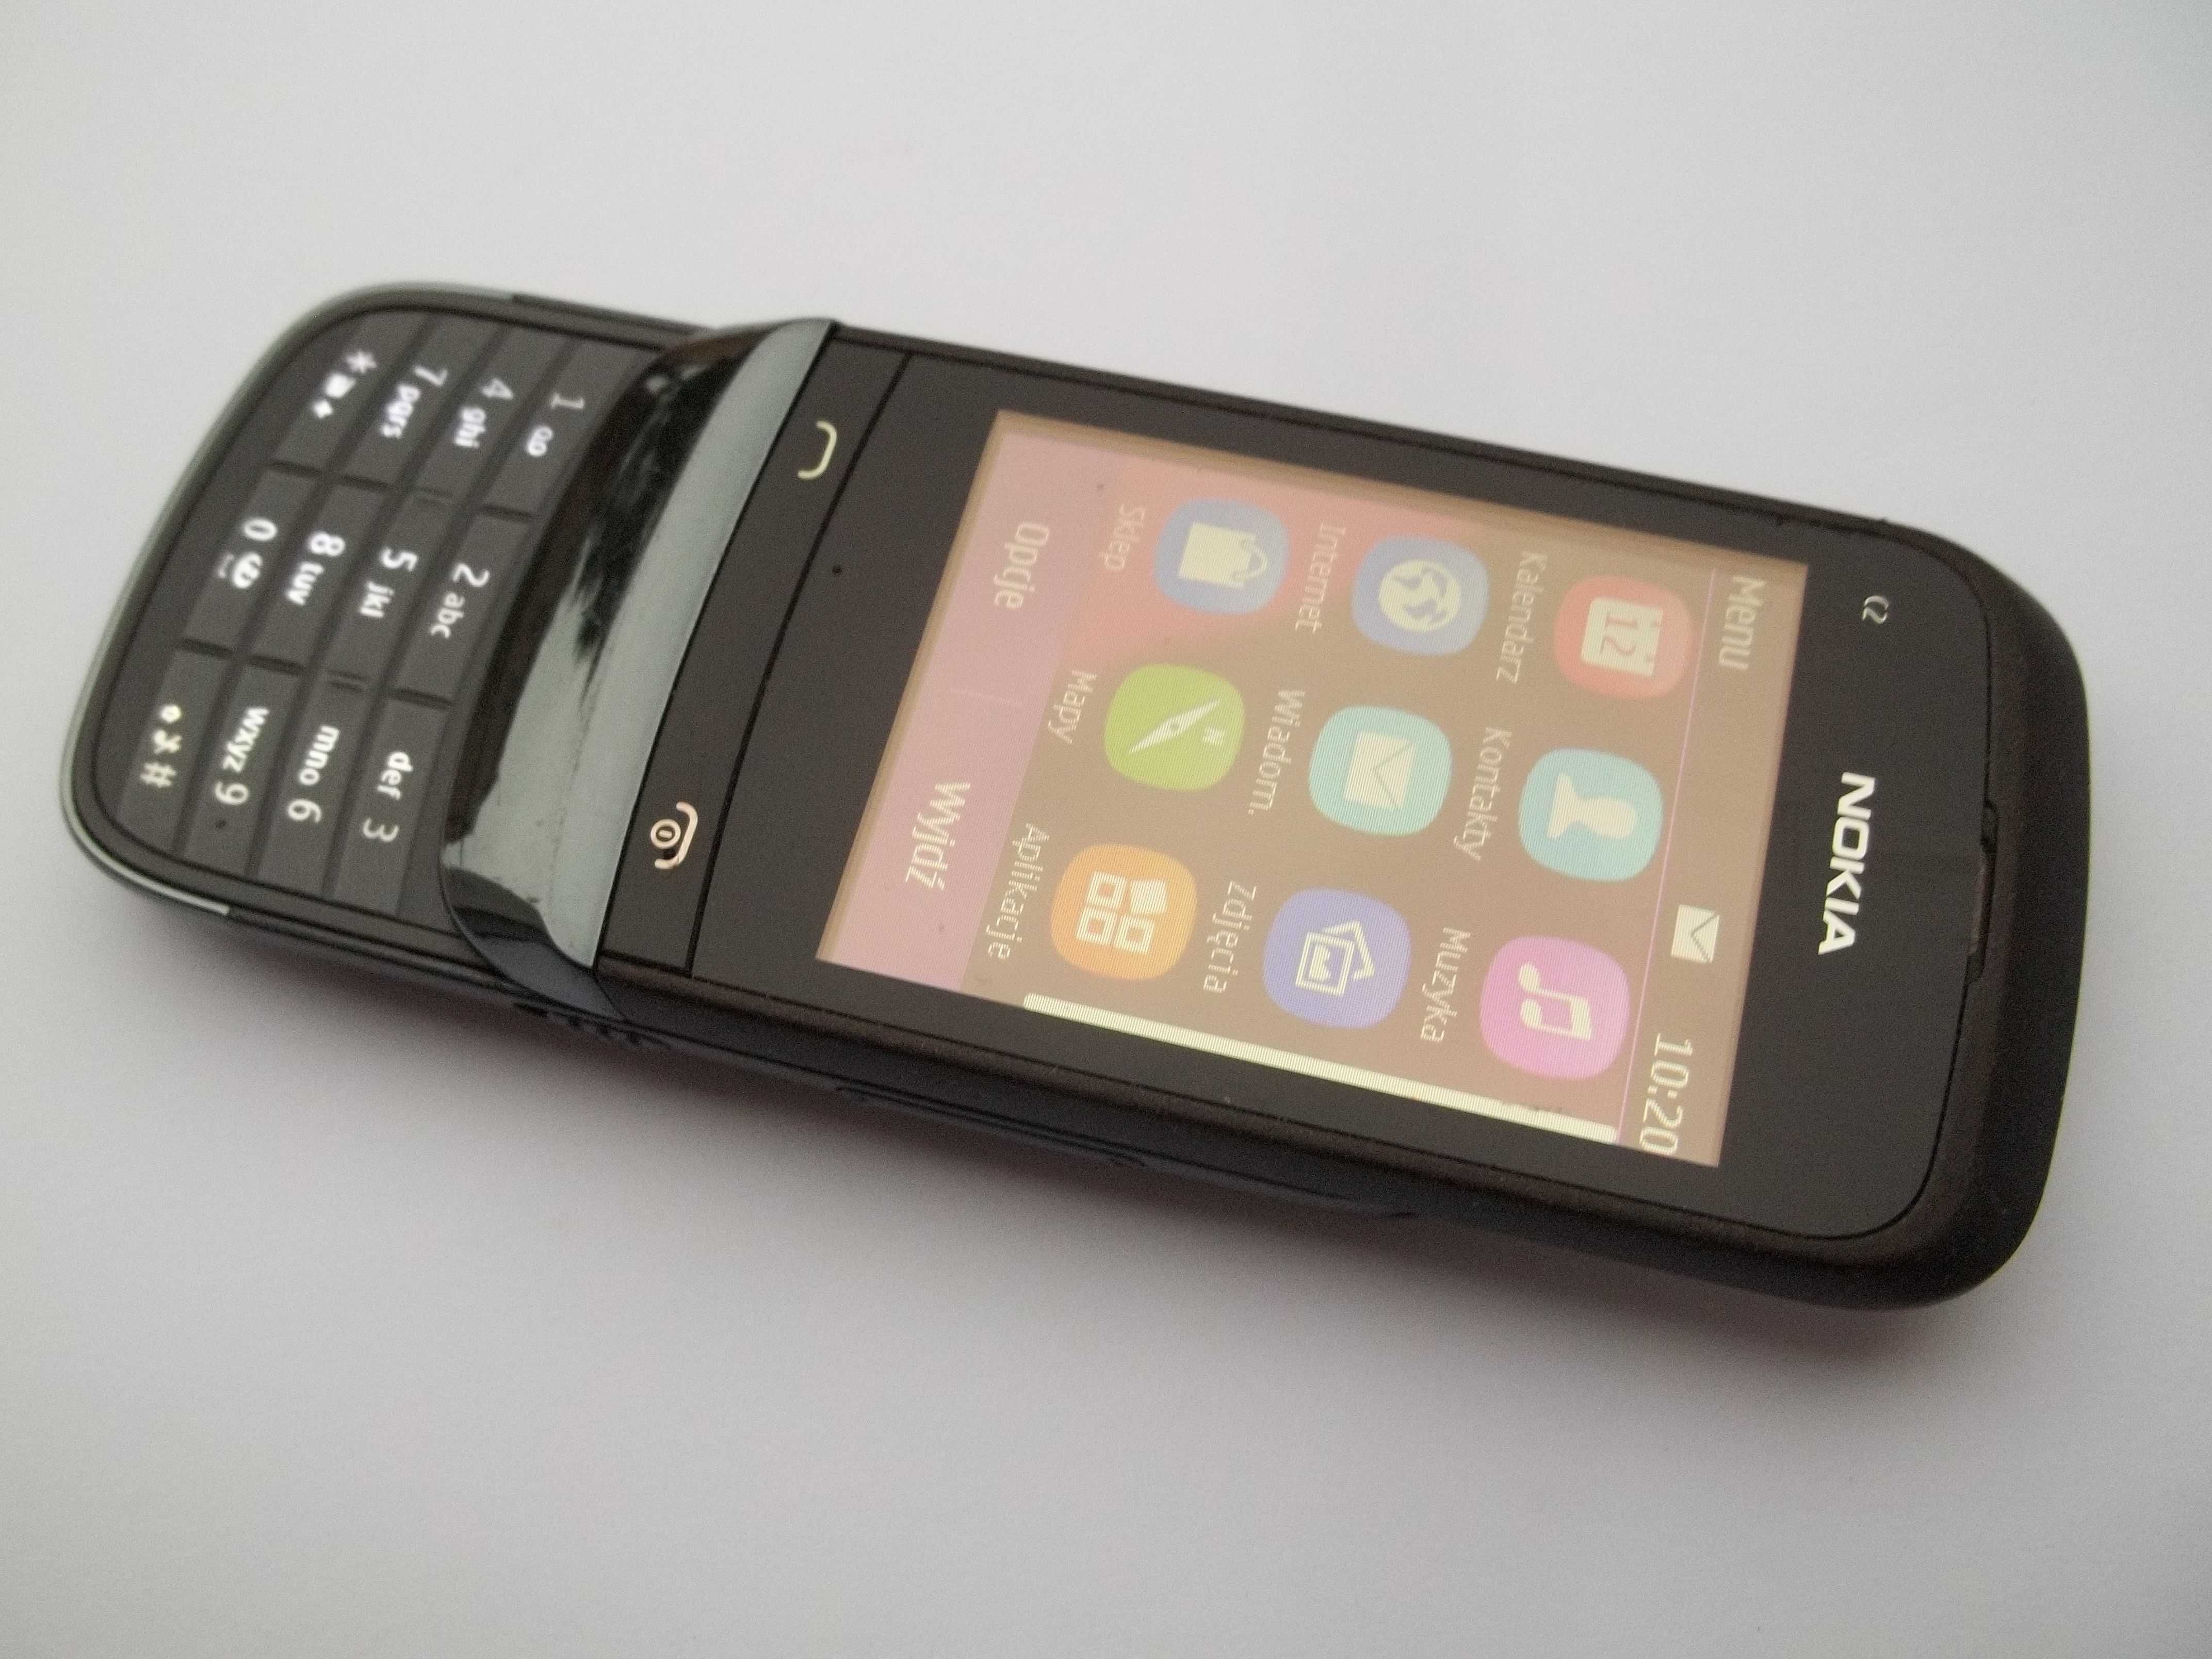 Telefon Nokia C2-02 - Ładna.